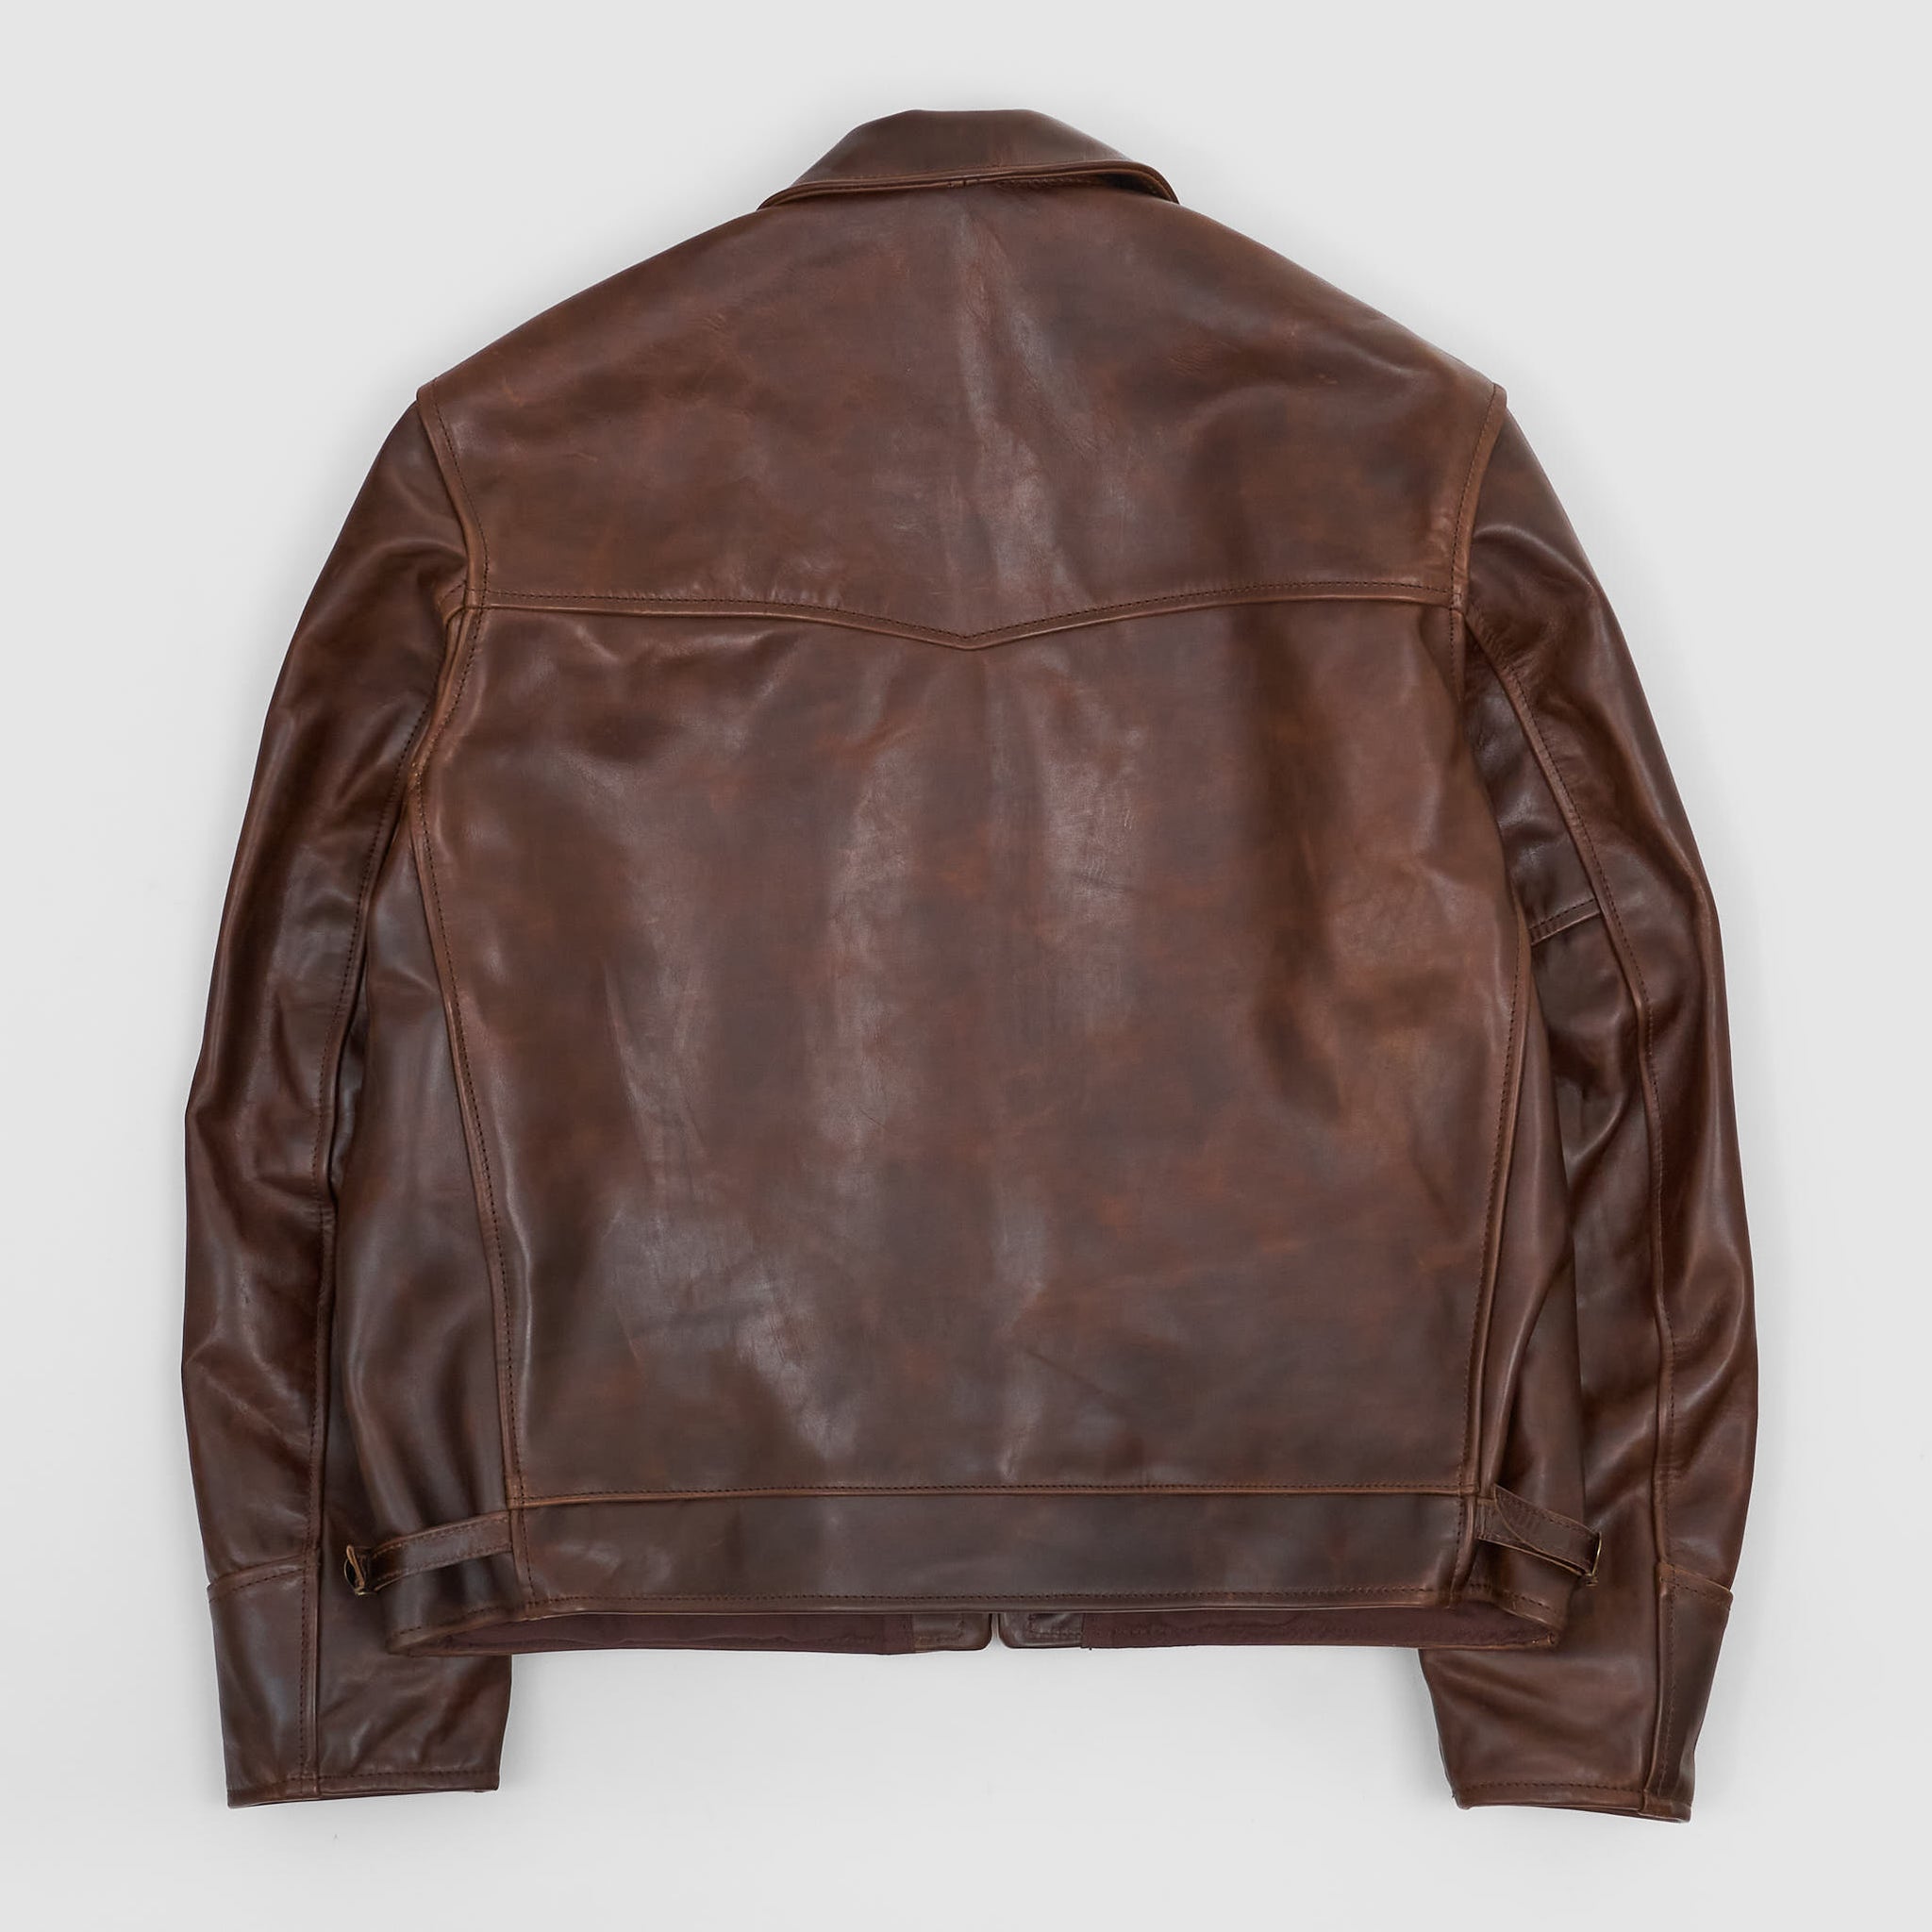 Aero Leathers Highwayman Leather Jacket - DeeCee style